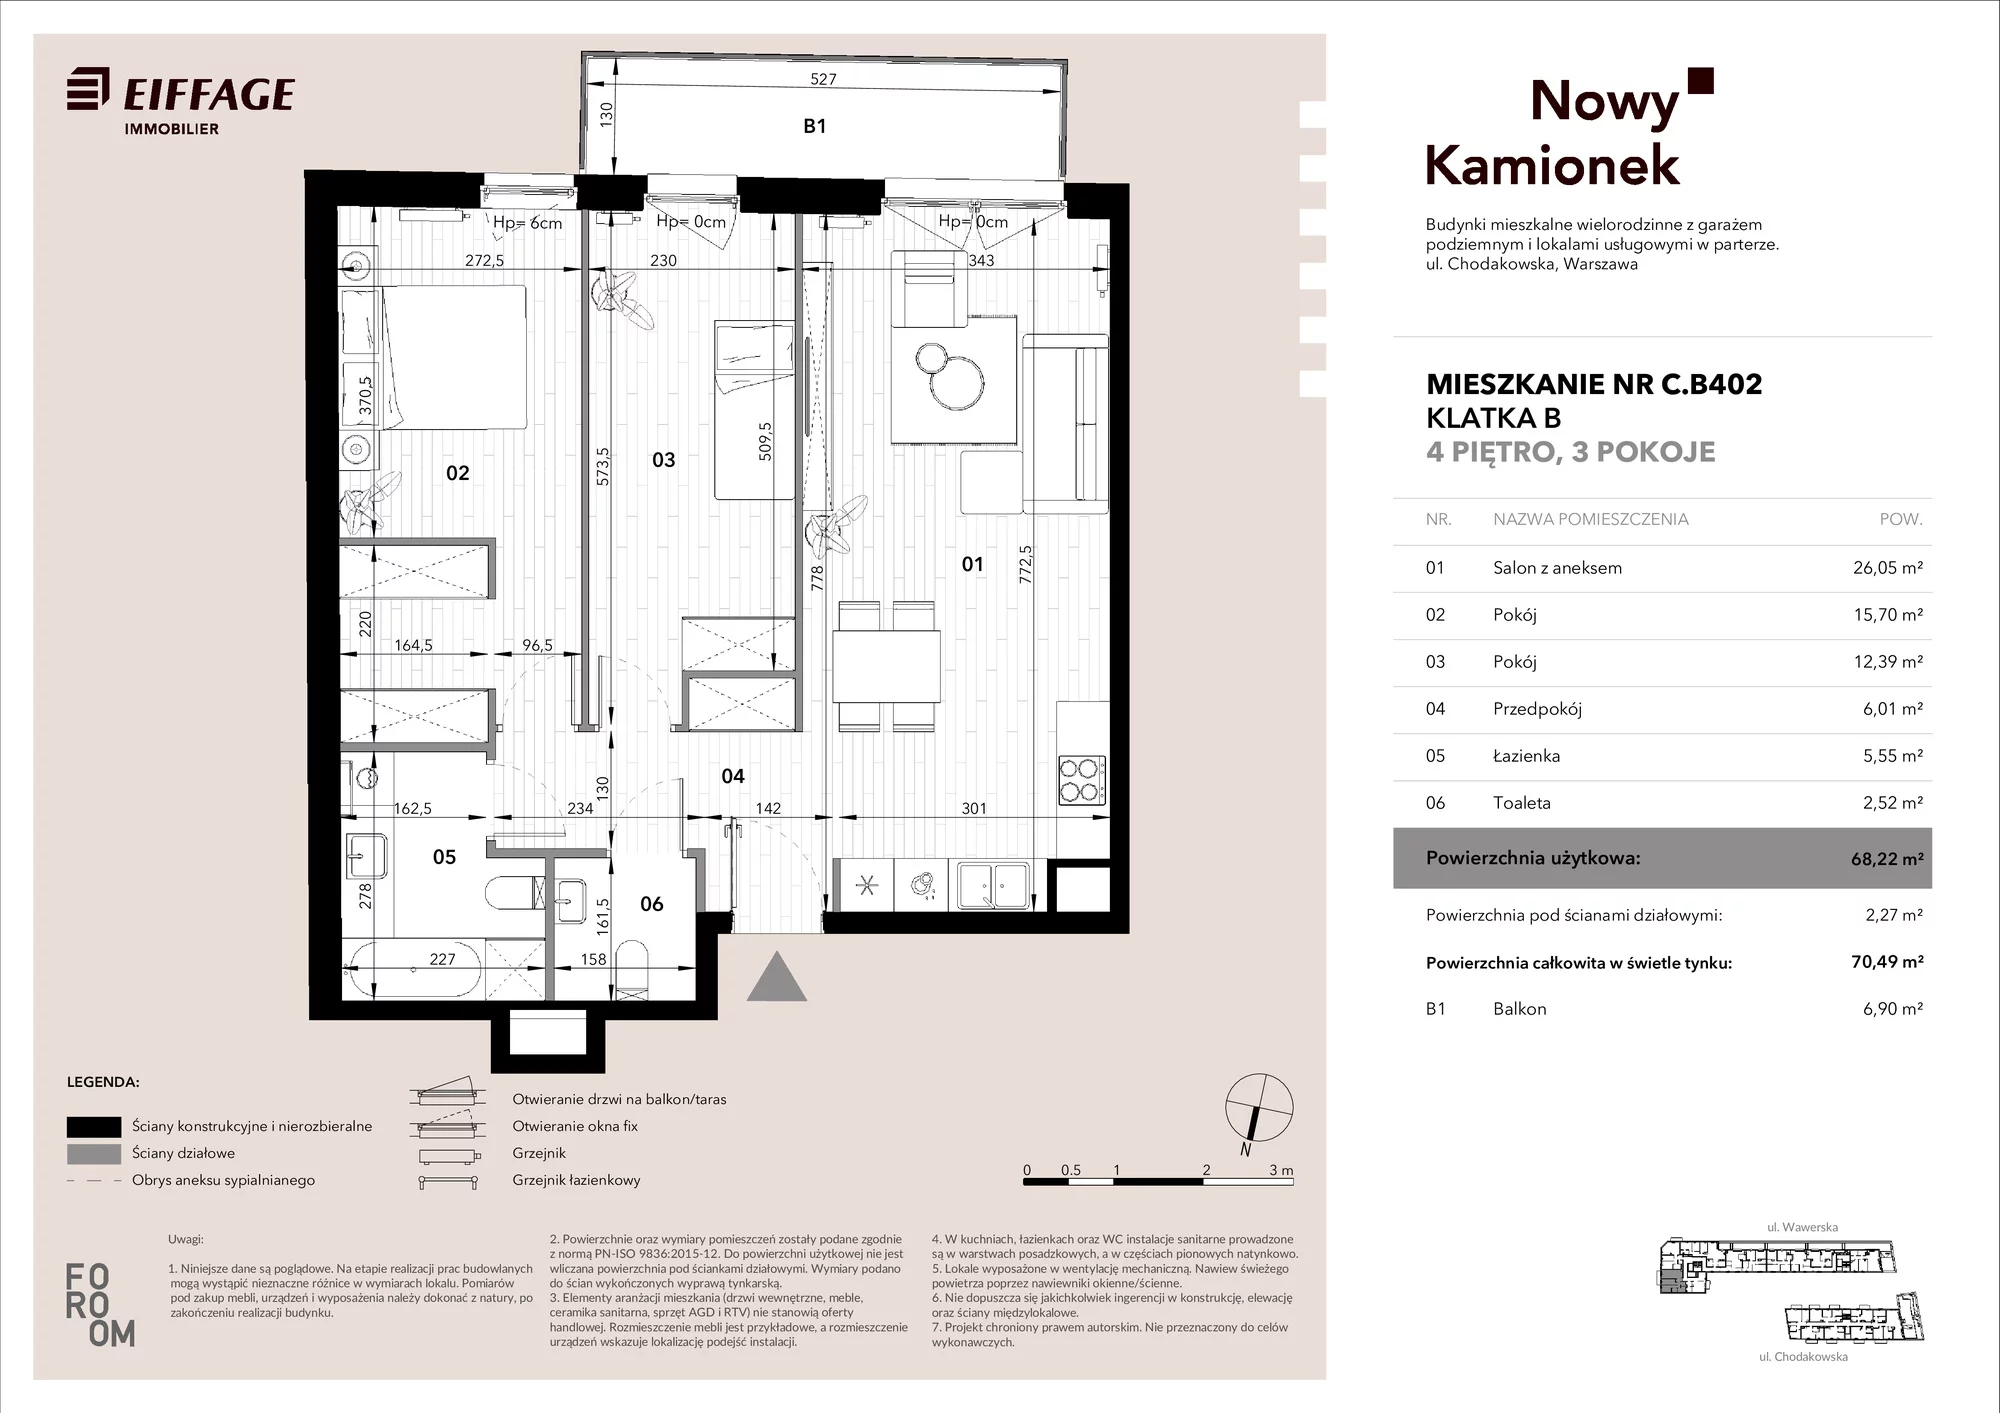 Mieszkanie 68,22 m², piętro 4, oferta nr C.B402, Nowy Kamionek, Warszawa, Praga Południe, Kamionek, ul. Chodakowska